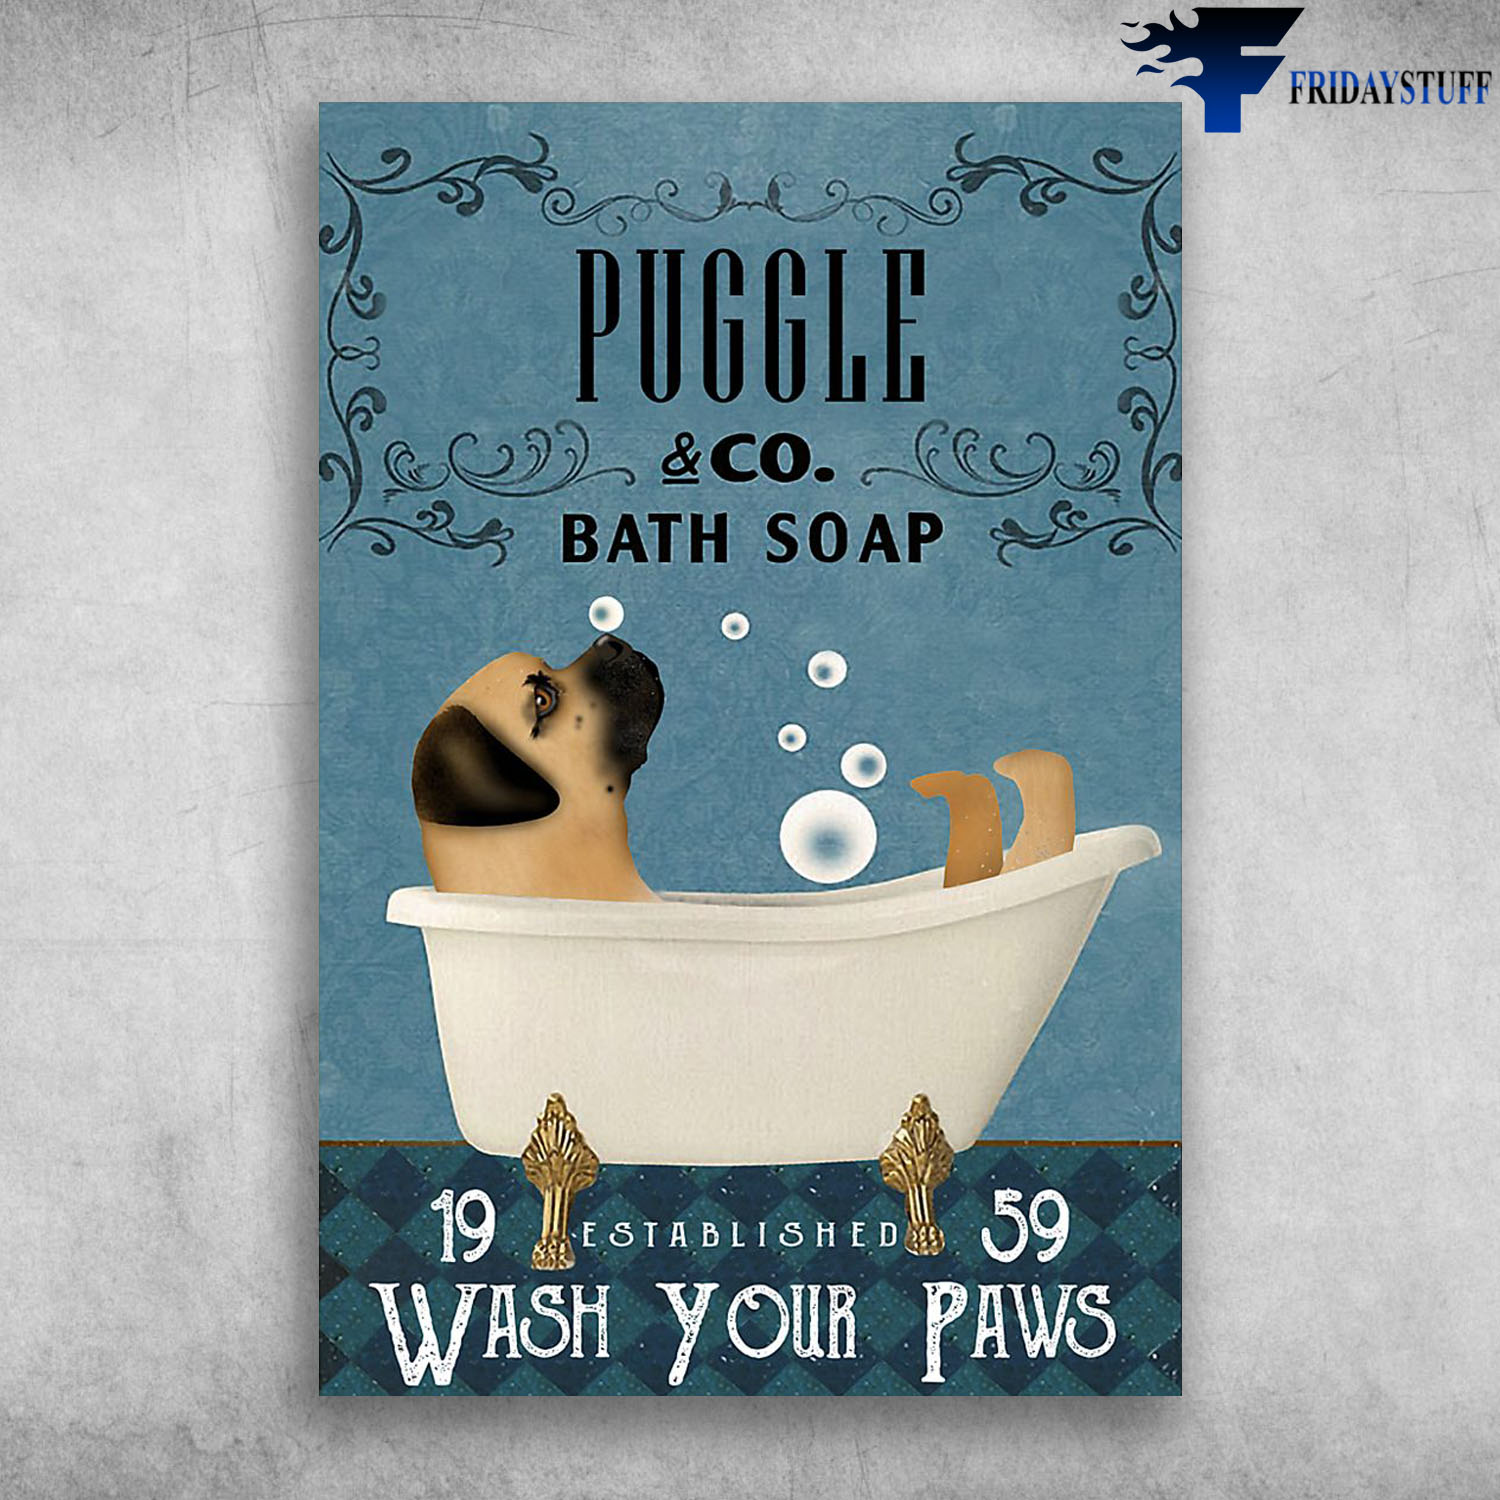 Puggle In Bathtub Bath Soap Established Wash Your Paws